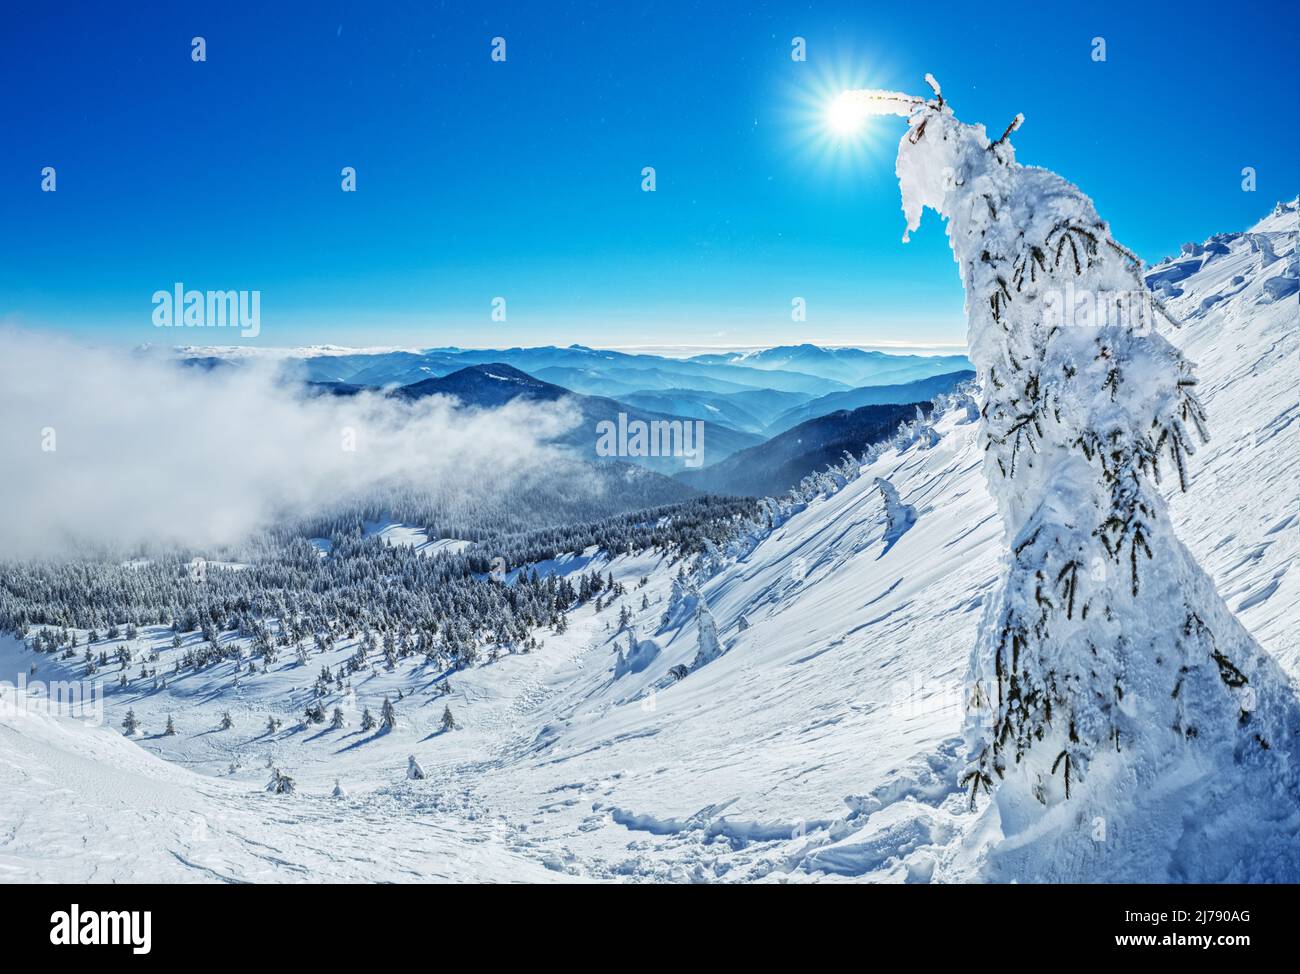 Magnifique paysage d'hiver ensoleillé dans les montagnes de Thottoy. Montagne et sapins couverts de neige. Banque D'Images